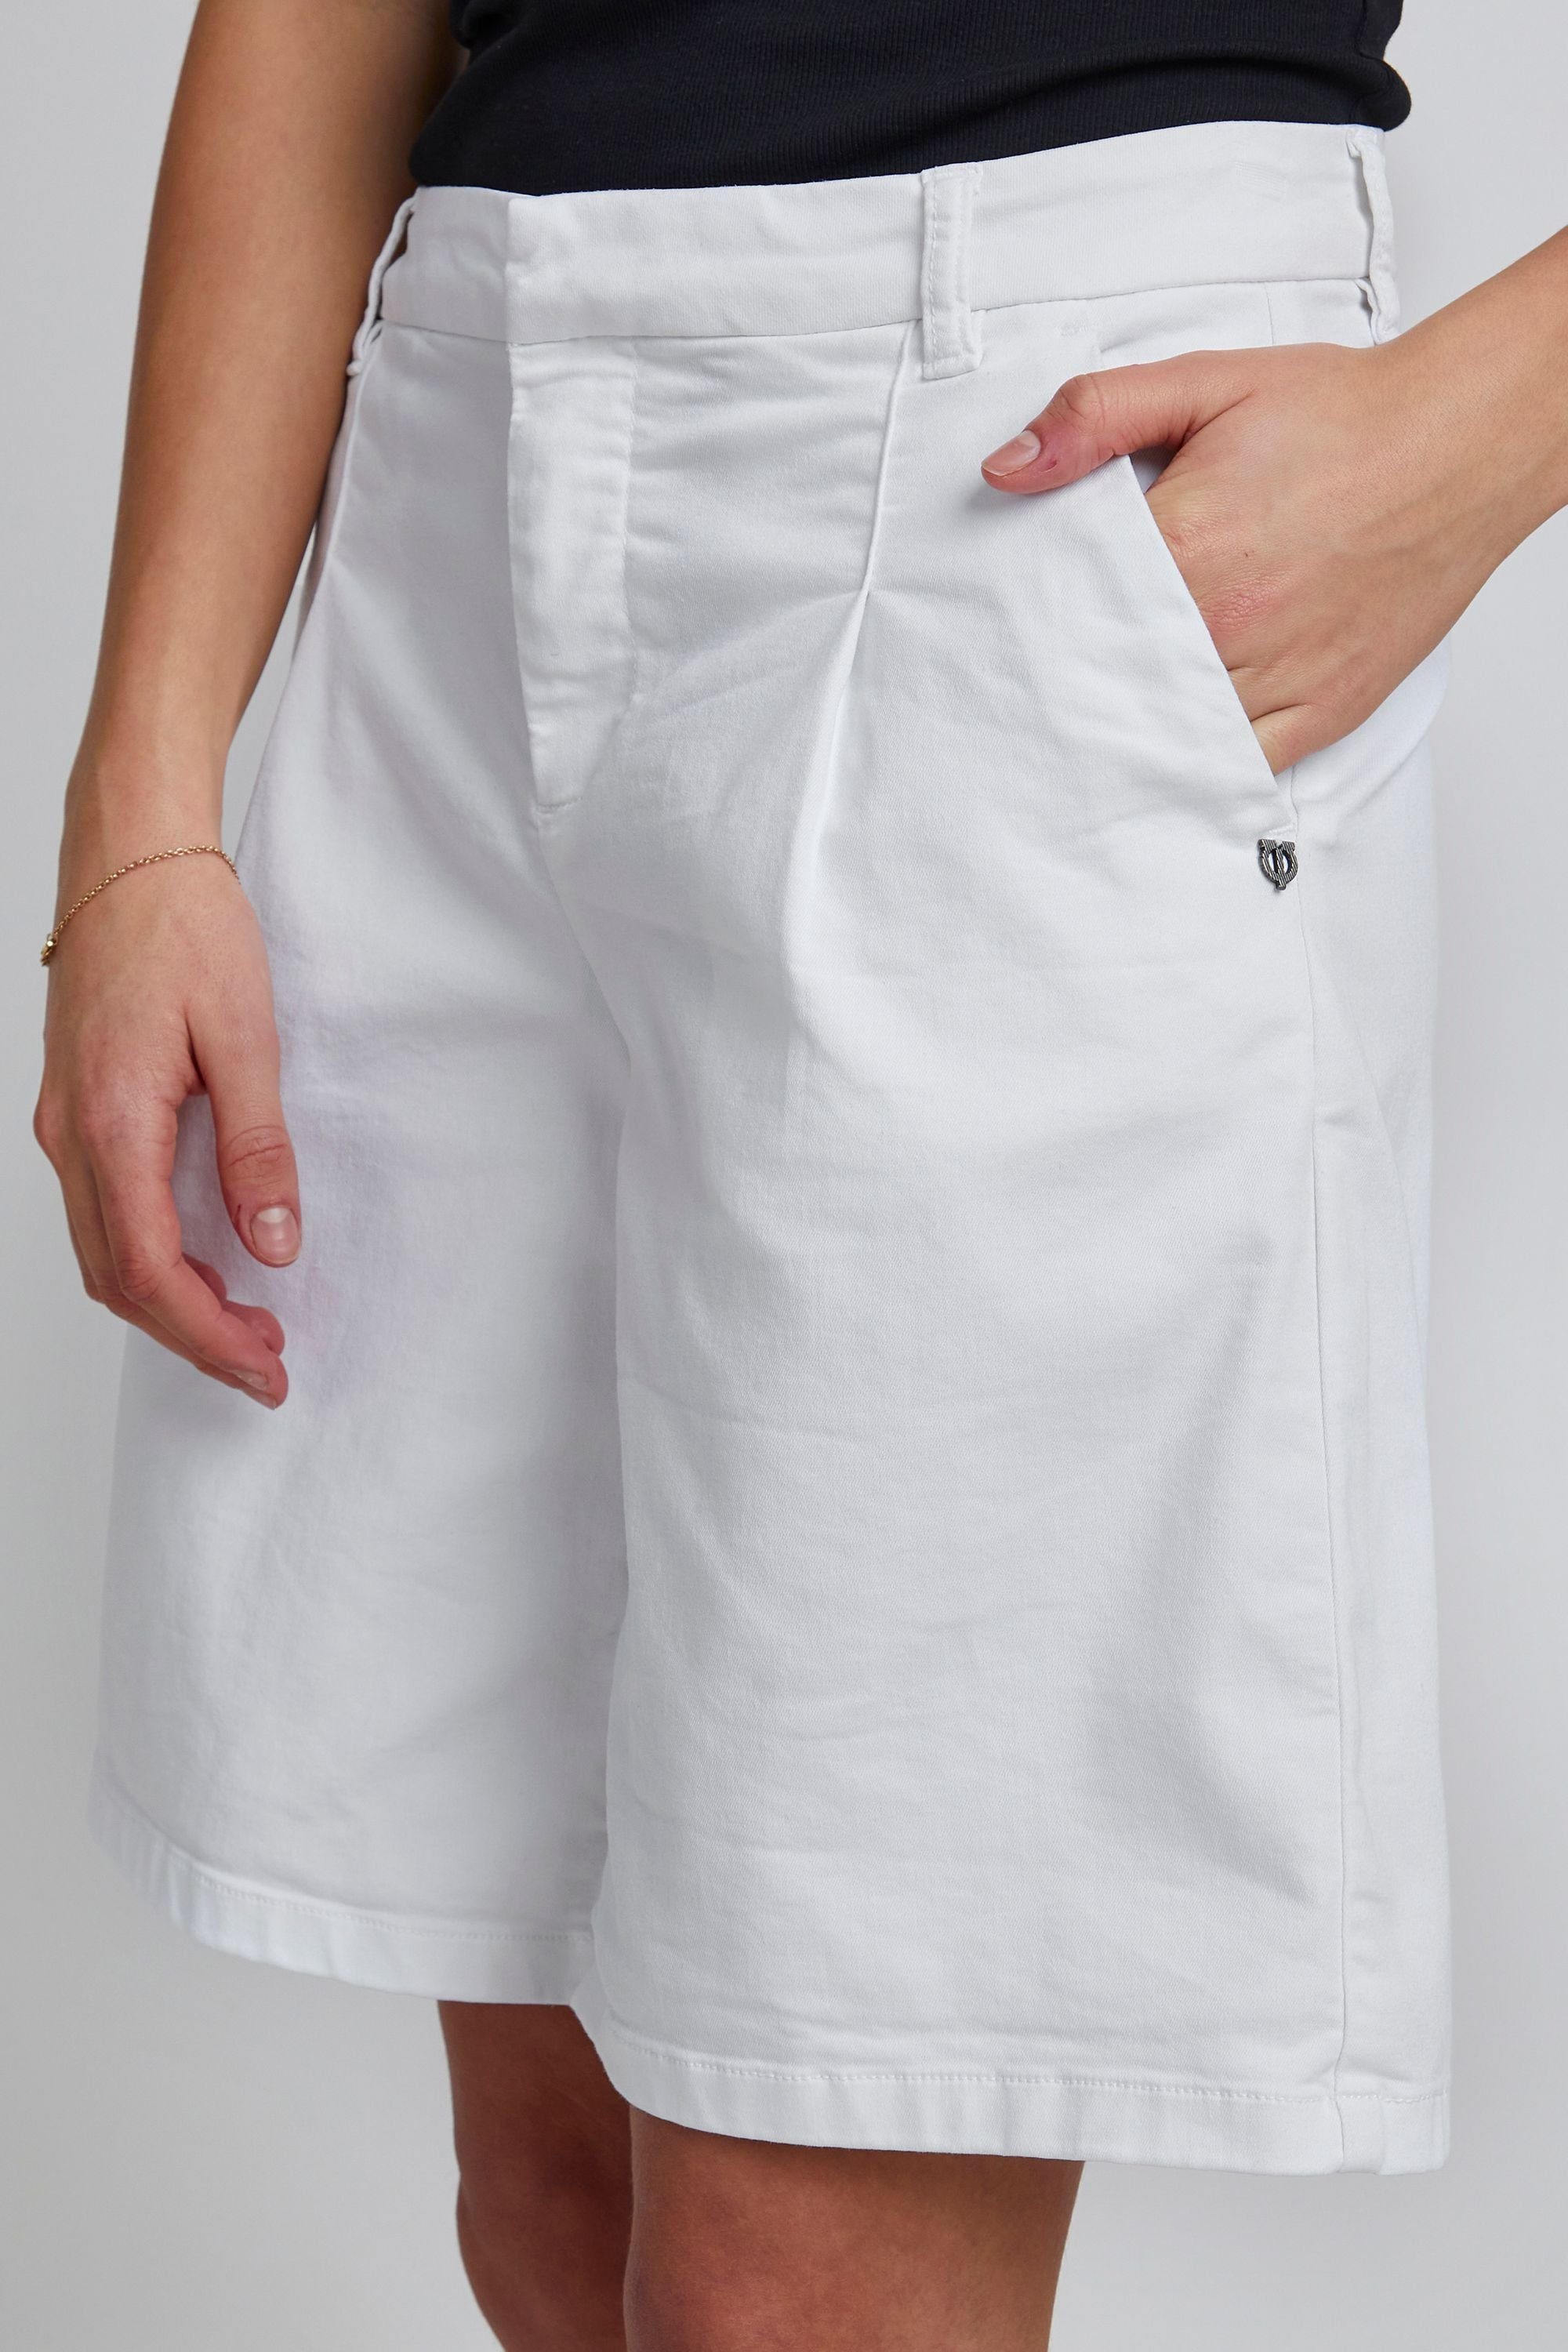 Shorts Bright Pulz White 50206530 PZROSITA (110601) Jeans -